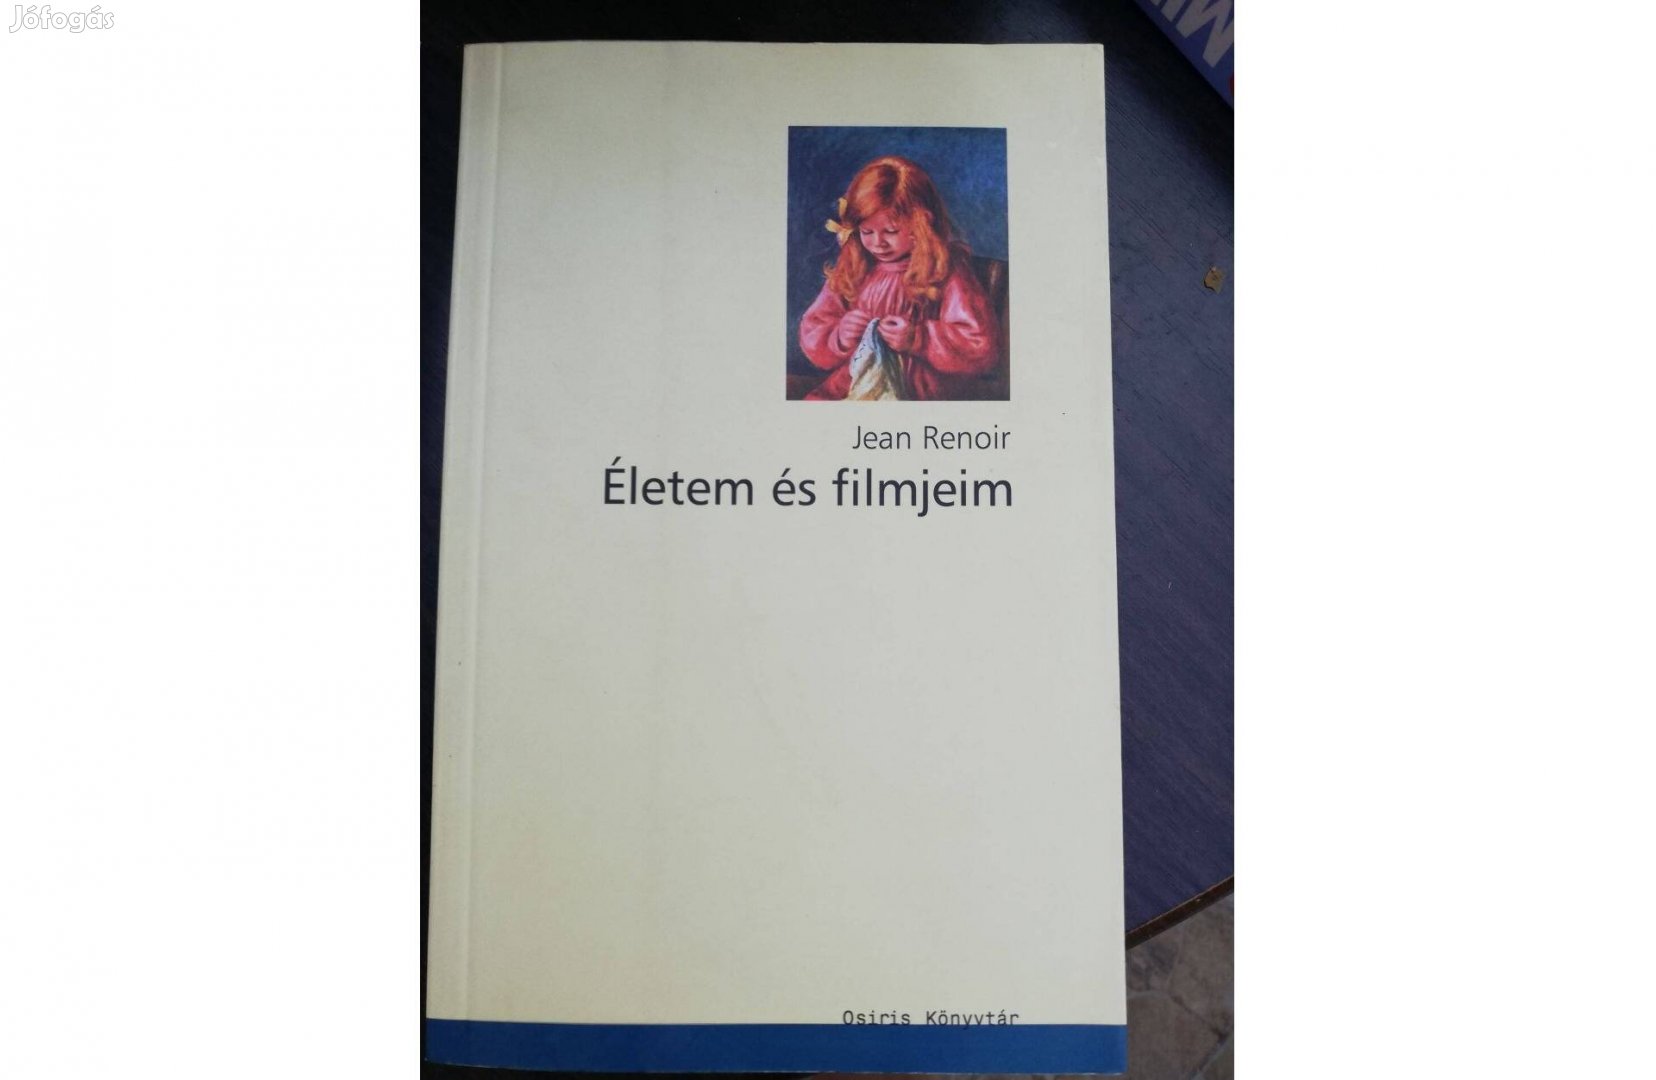 Jean Renoir - Életem és filmjeim c. könyve 800 forintért eladó